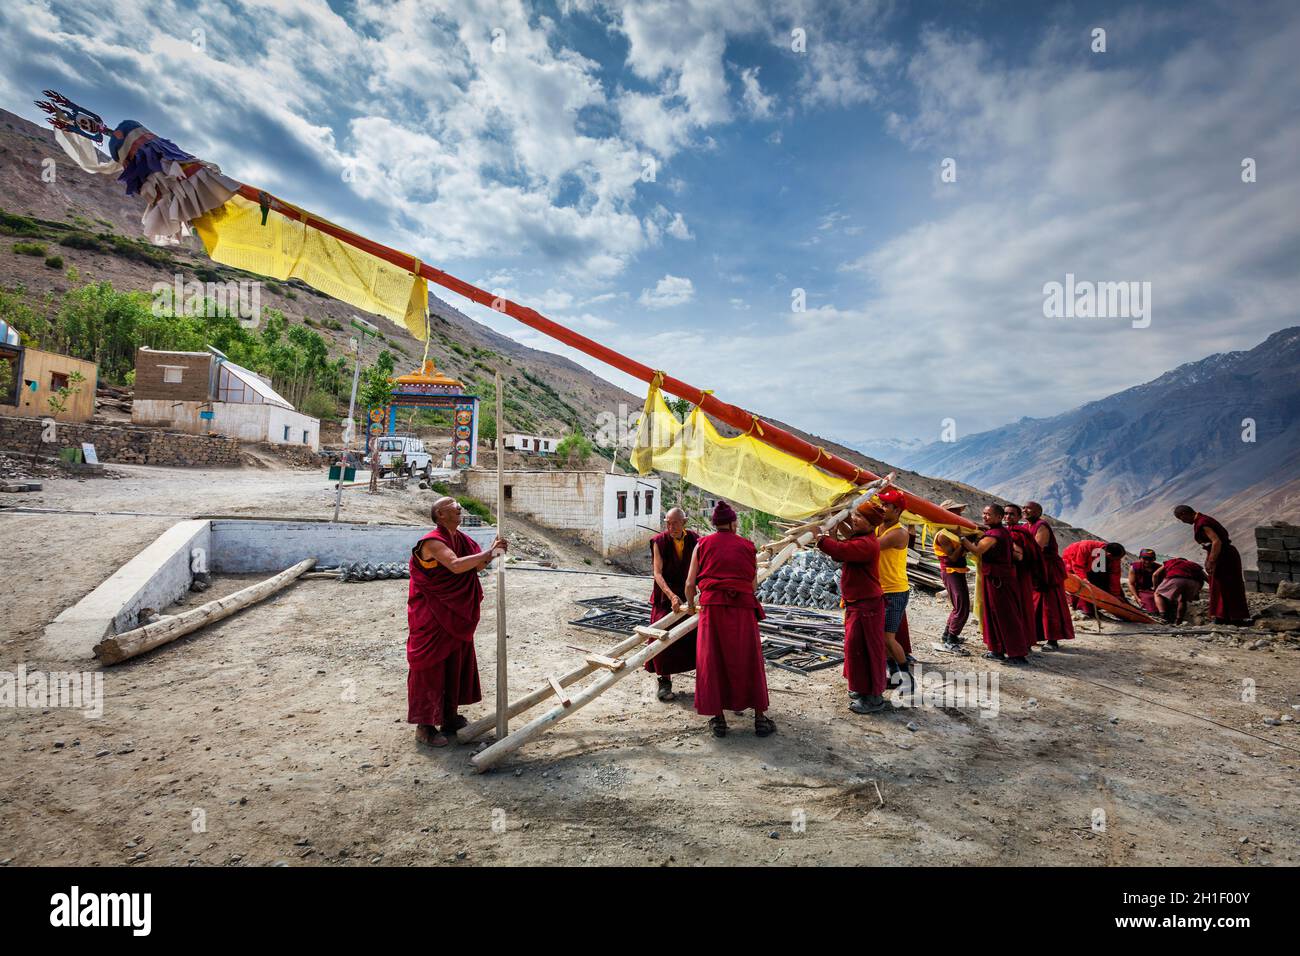 DHANKAR, INDIA - 2 LUGLIO 2012: I monaci buddisti tibetani di Dhankar gompa hanno istituito il palo con bandiere di preghiera. Dhankar, valle di Spiti, Himachal Pradesh, Foto Stock